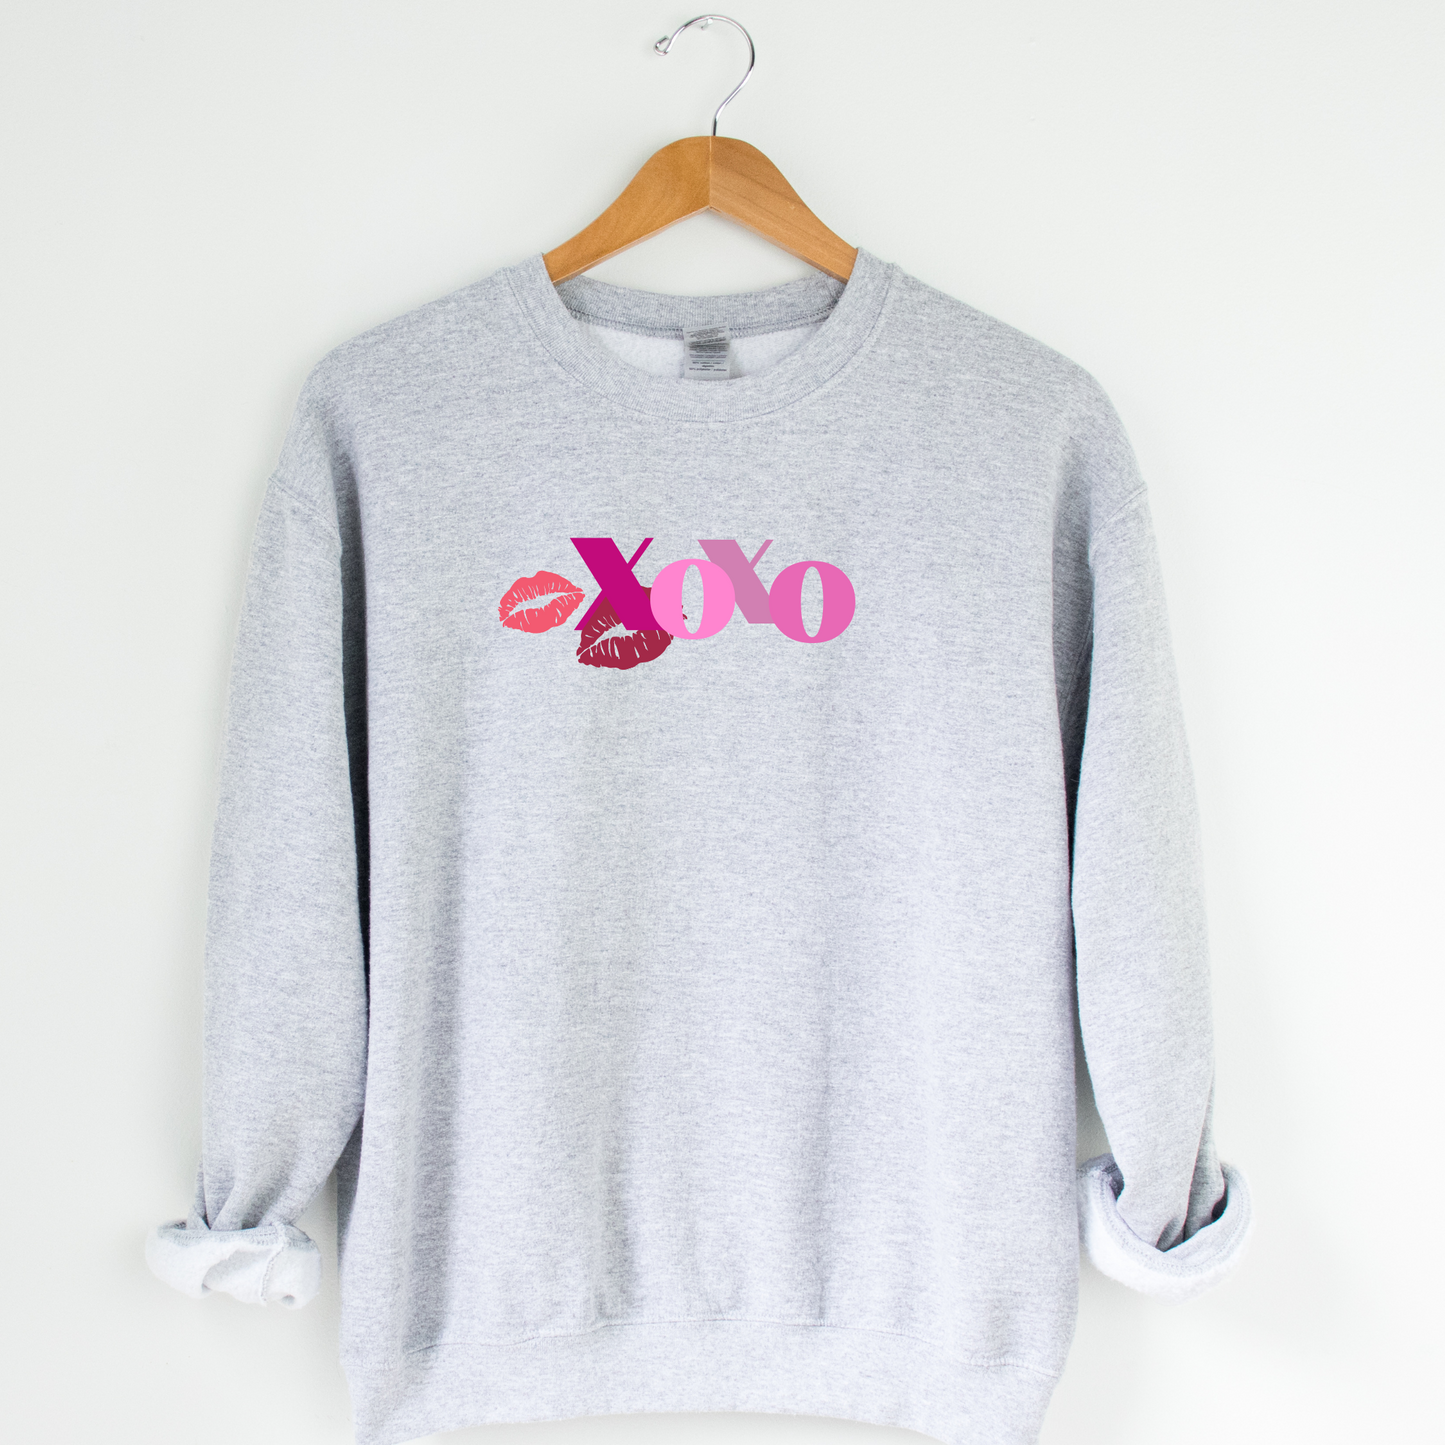 XOXO Crew Neck Graphic Sweater